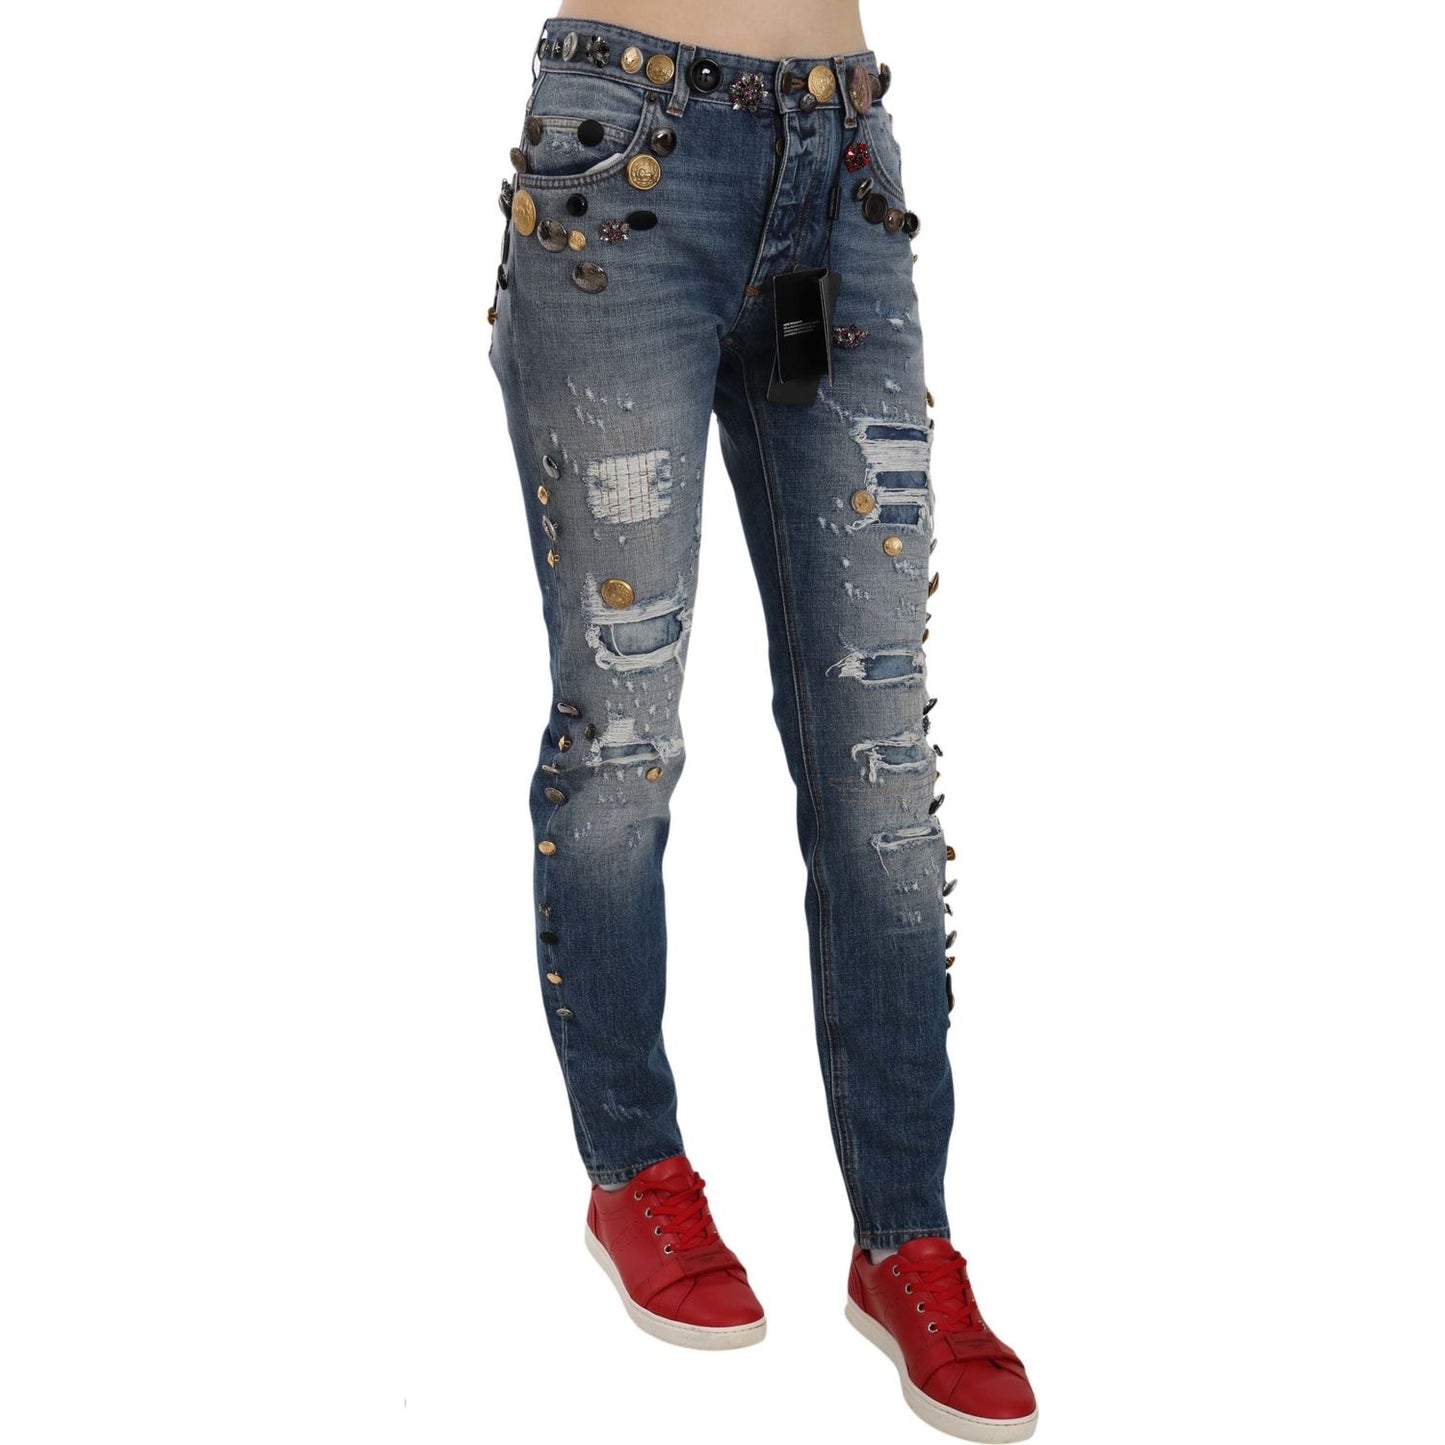 Dolce & Gabbana Crystal Embellished Luxury Denim Jeans distressed-embellished-buttons-denim-pants-jeans